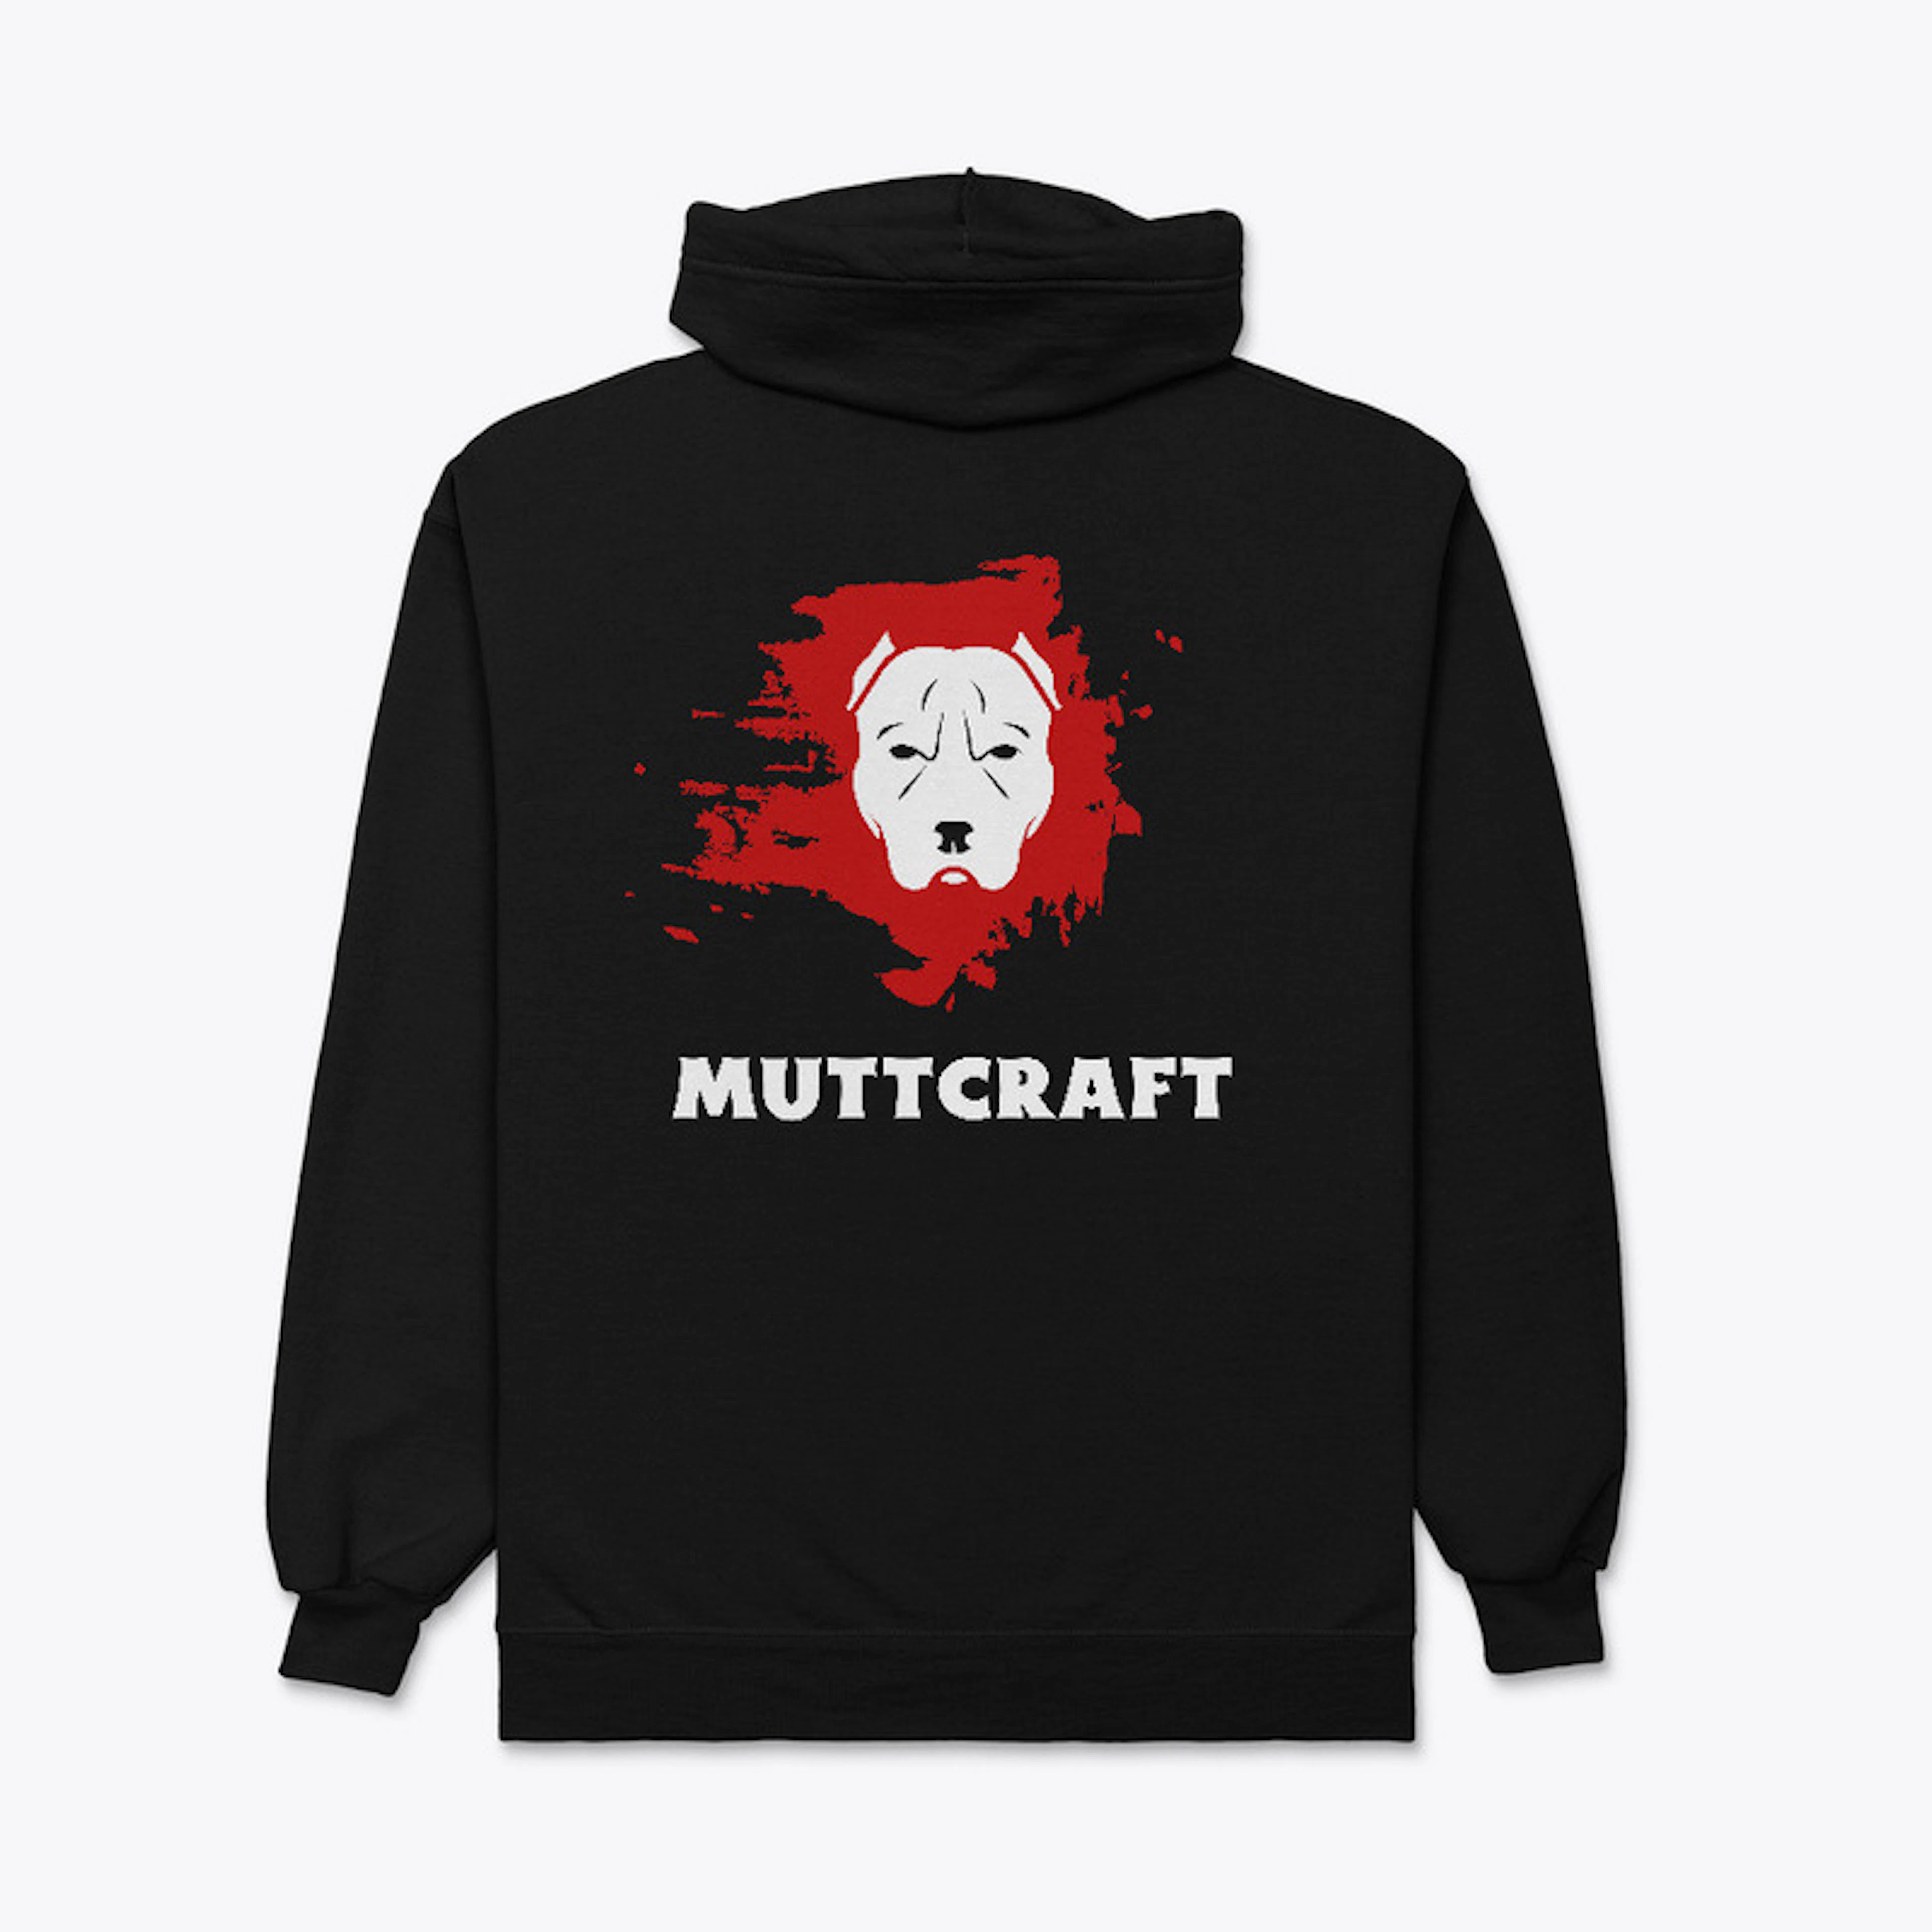 Muttcraft